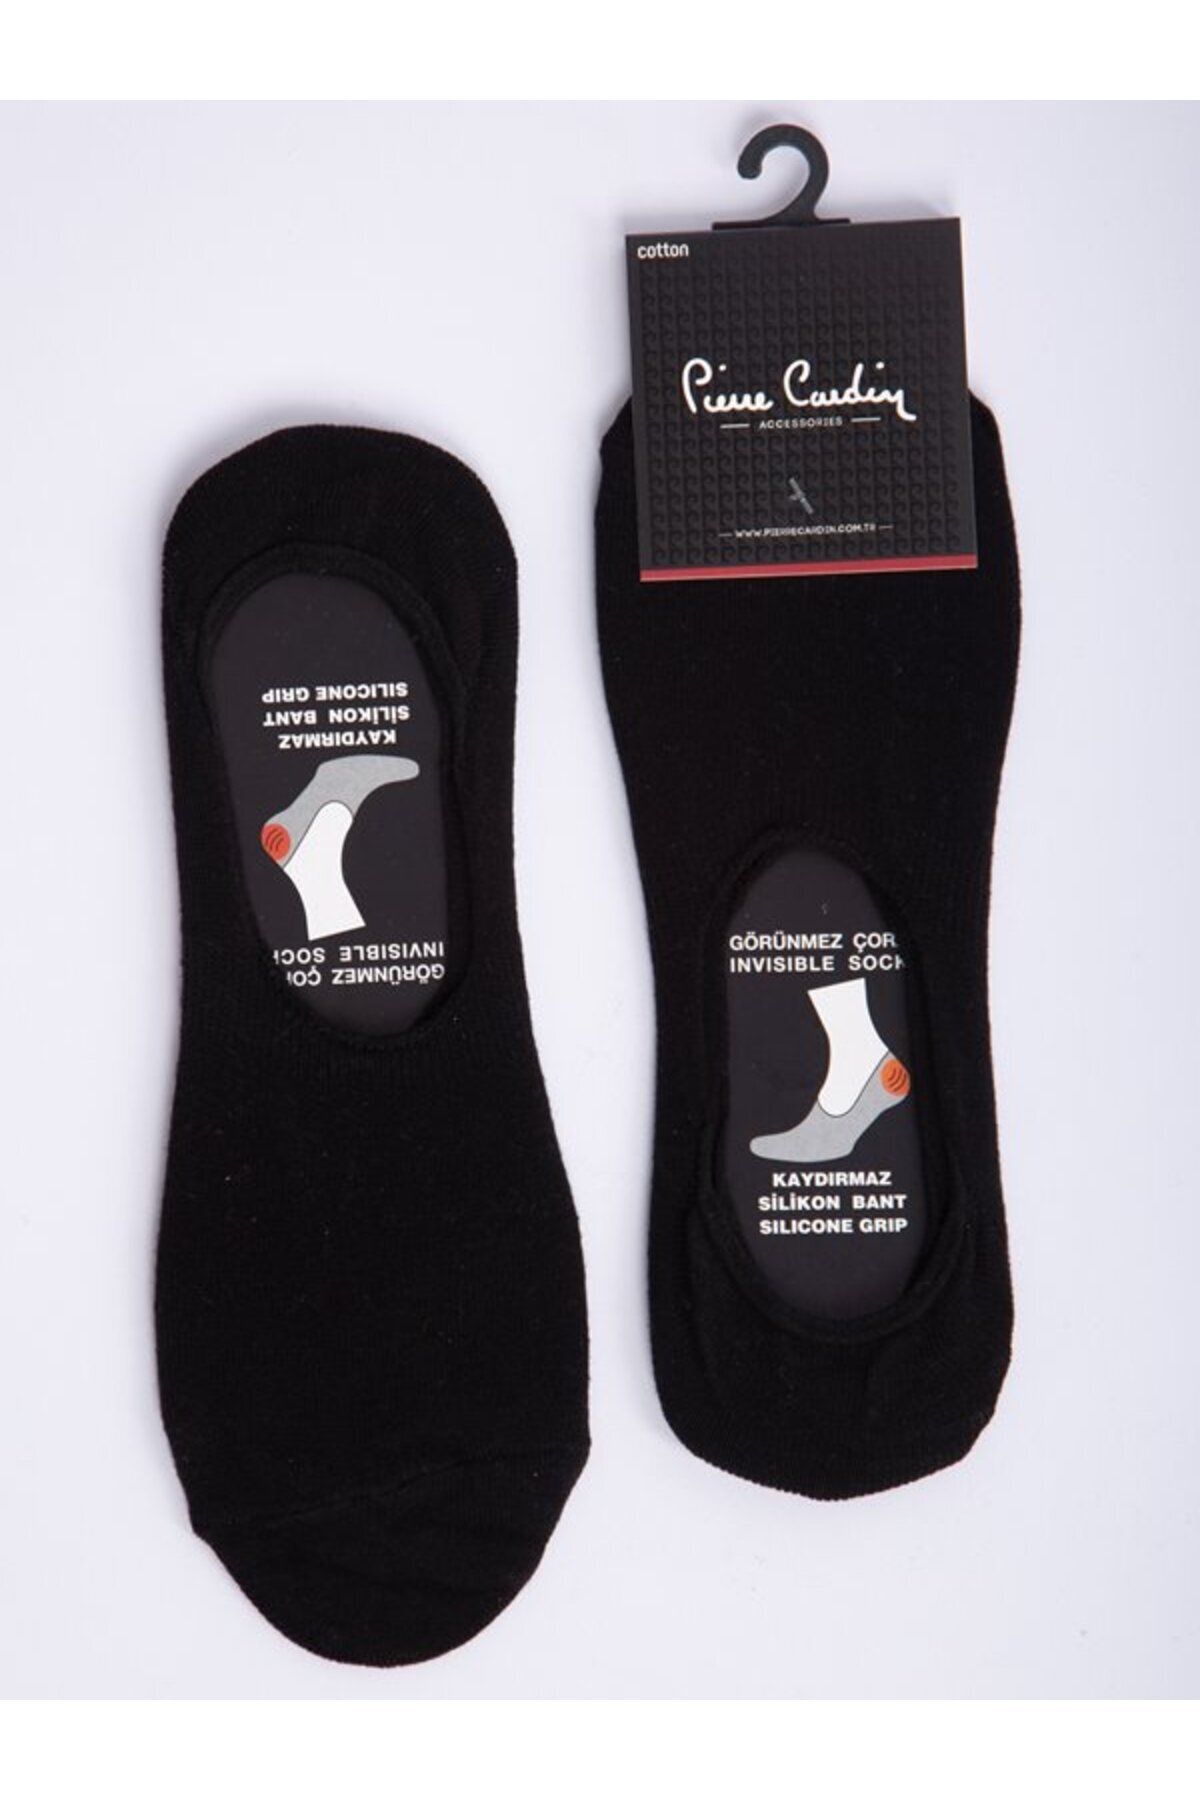 Pierre Cardin Pamuk 6’lı Siyah Slikon Bantlı Kaymaz Babet Çorap Pc-400